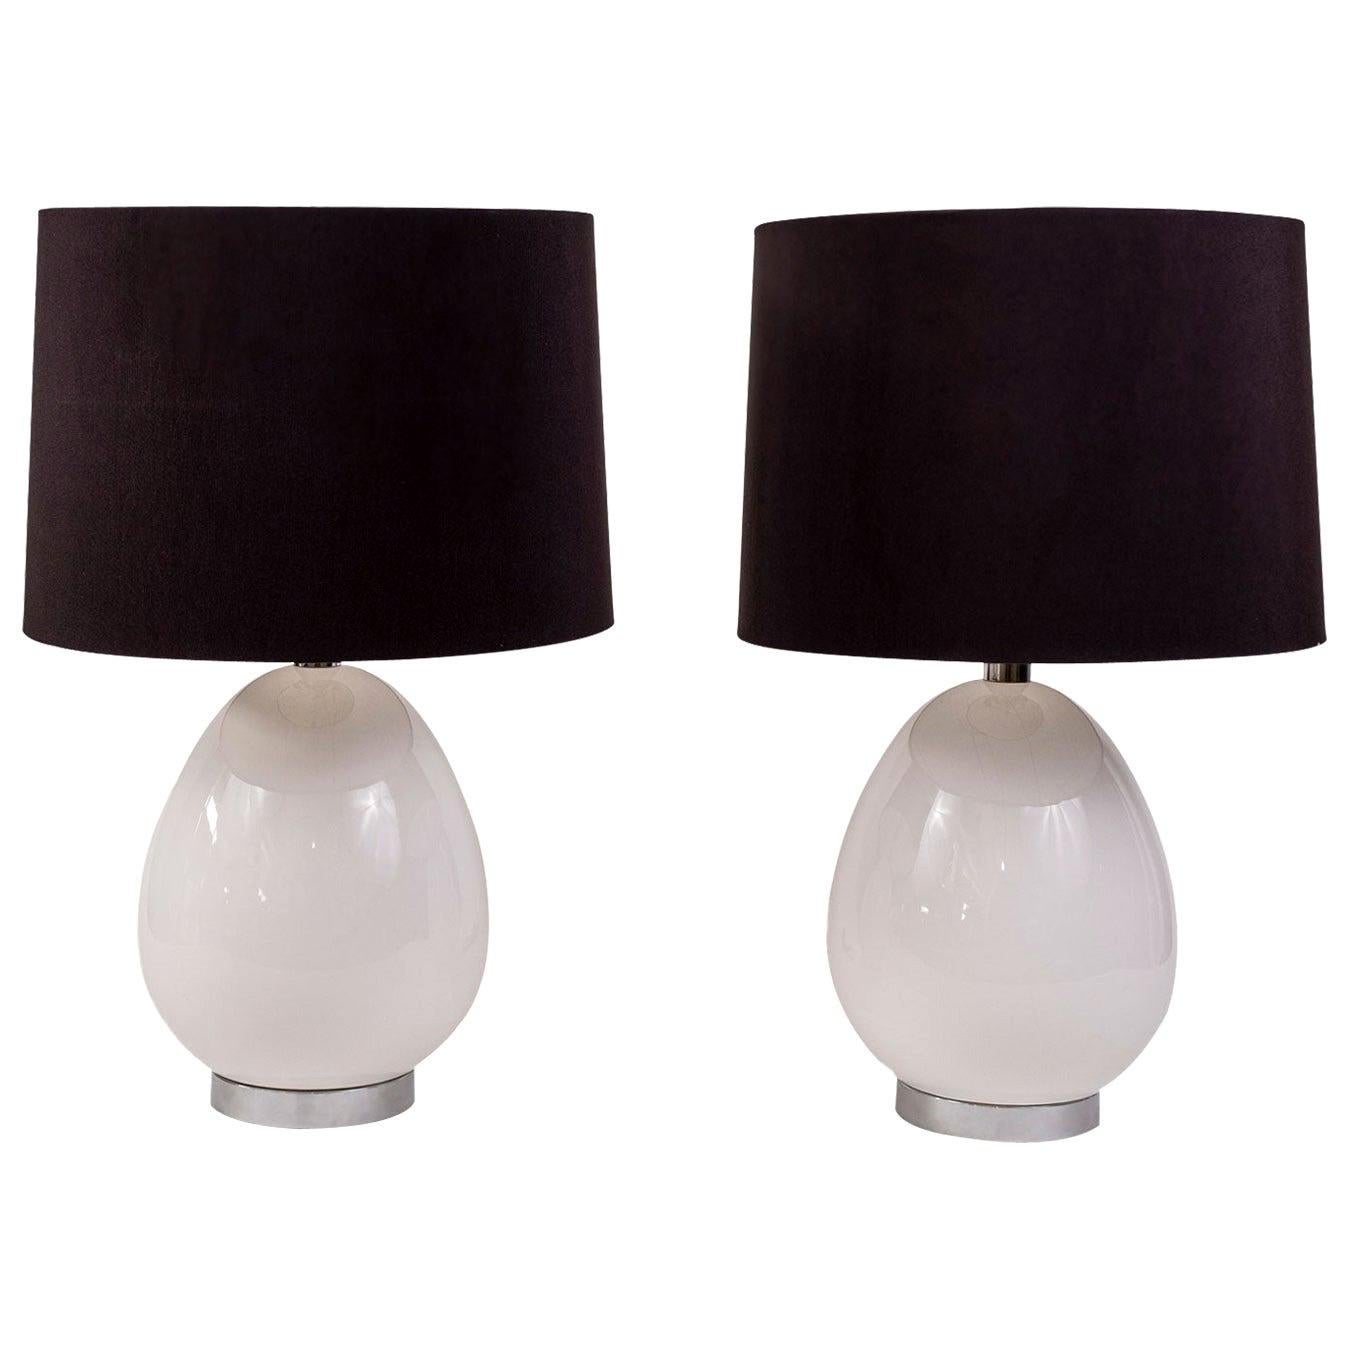 Pair of White Ceramic Lamps